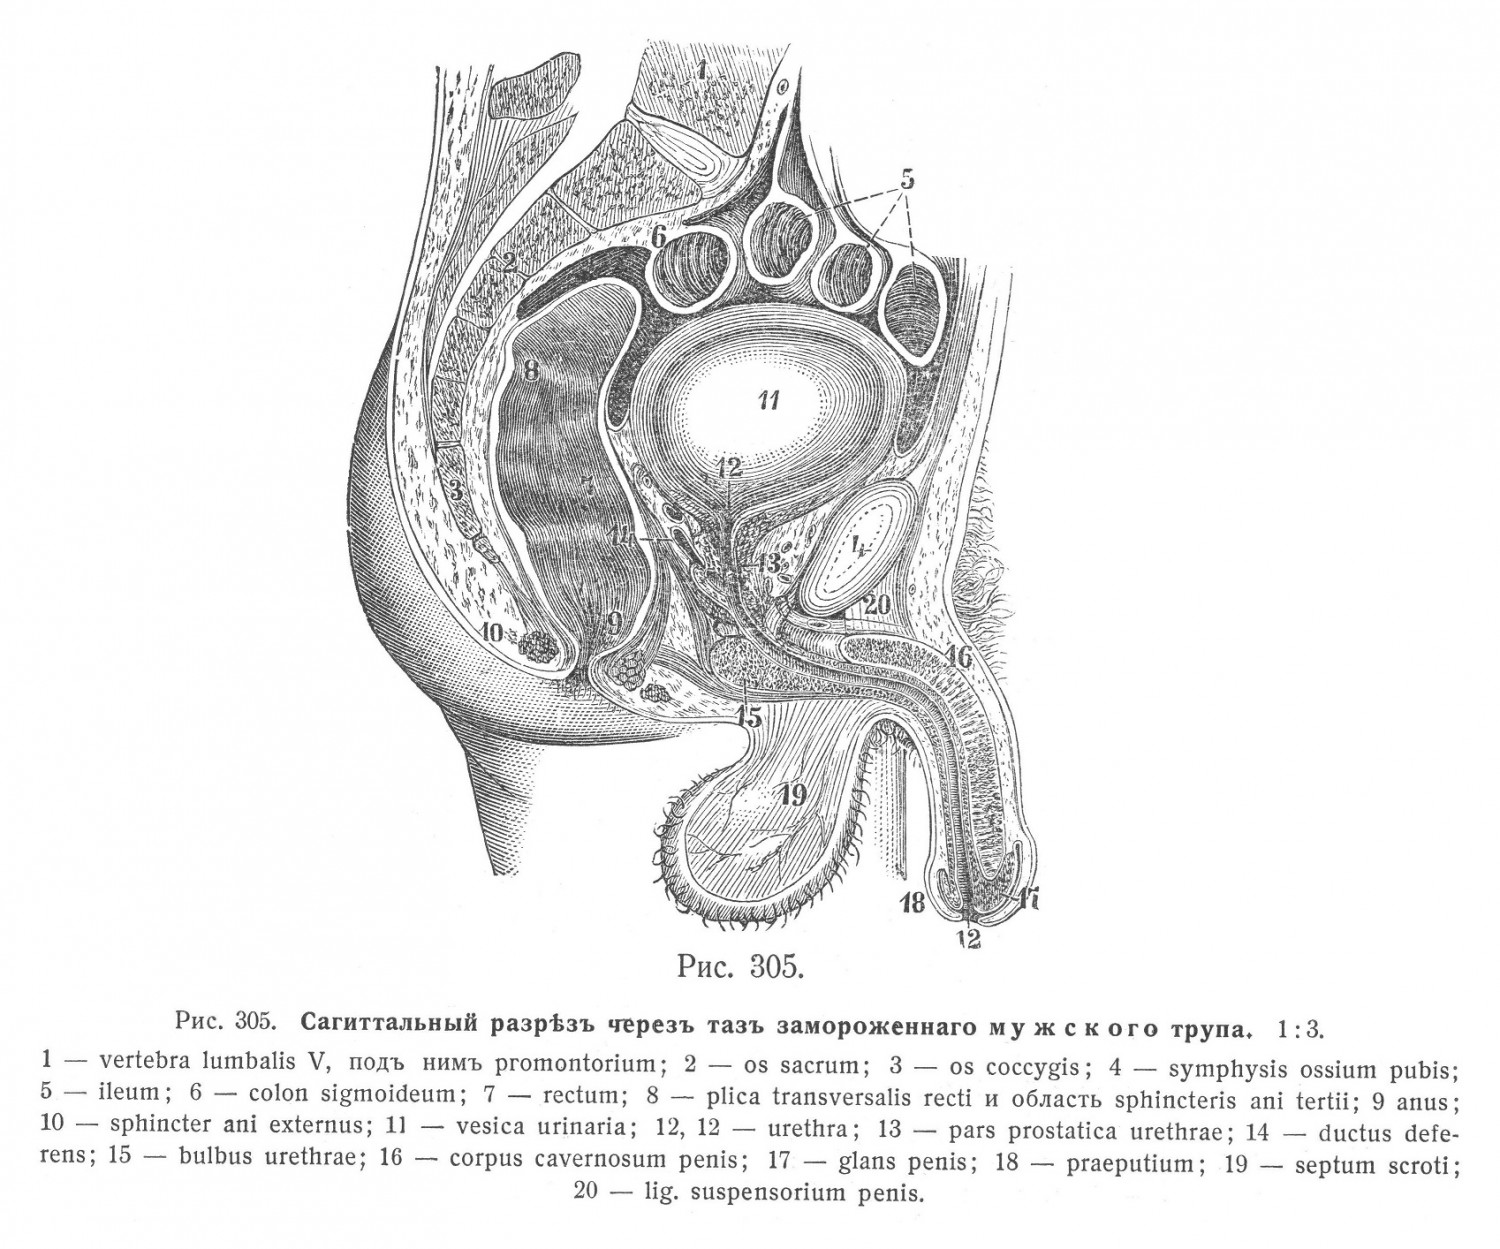 Мужскіе половые органы, organa genitalia virilia